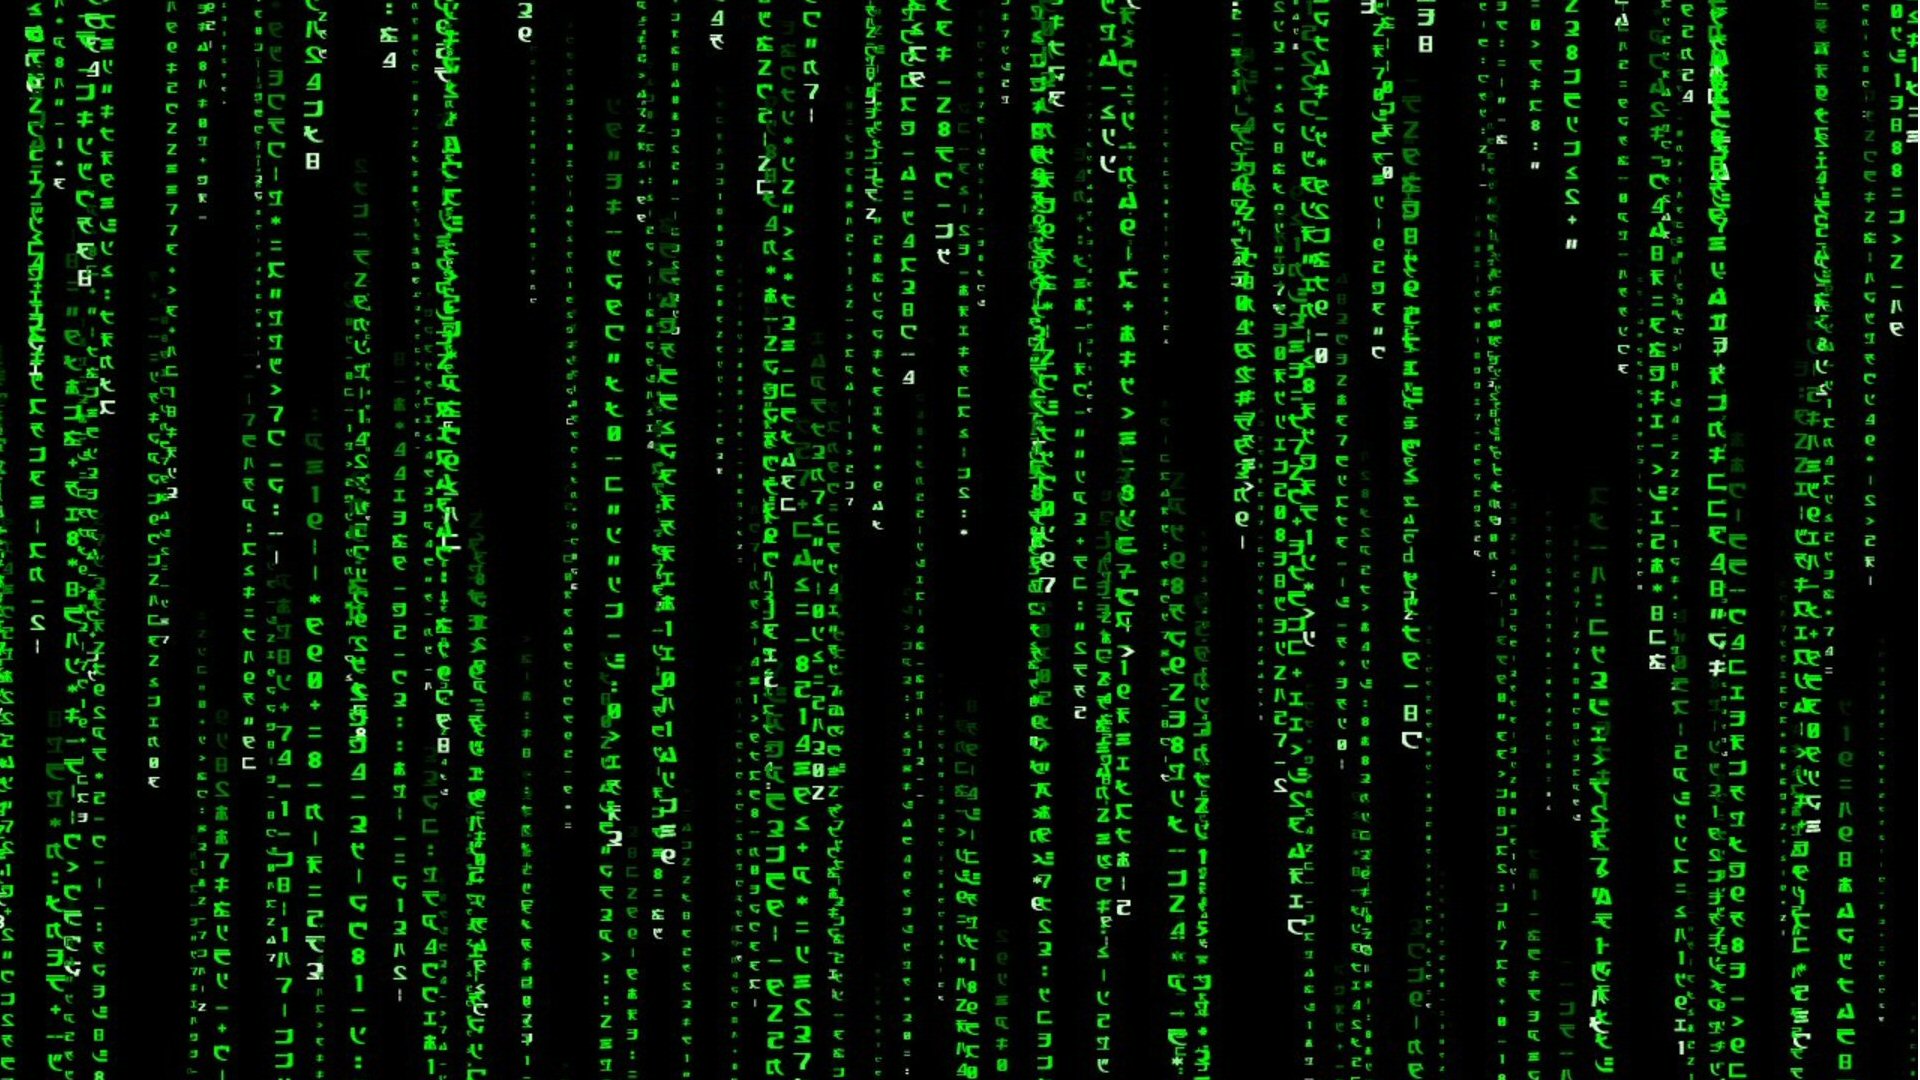 48+] The Matrix Desktop Wallpaper - WallpaperSafari